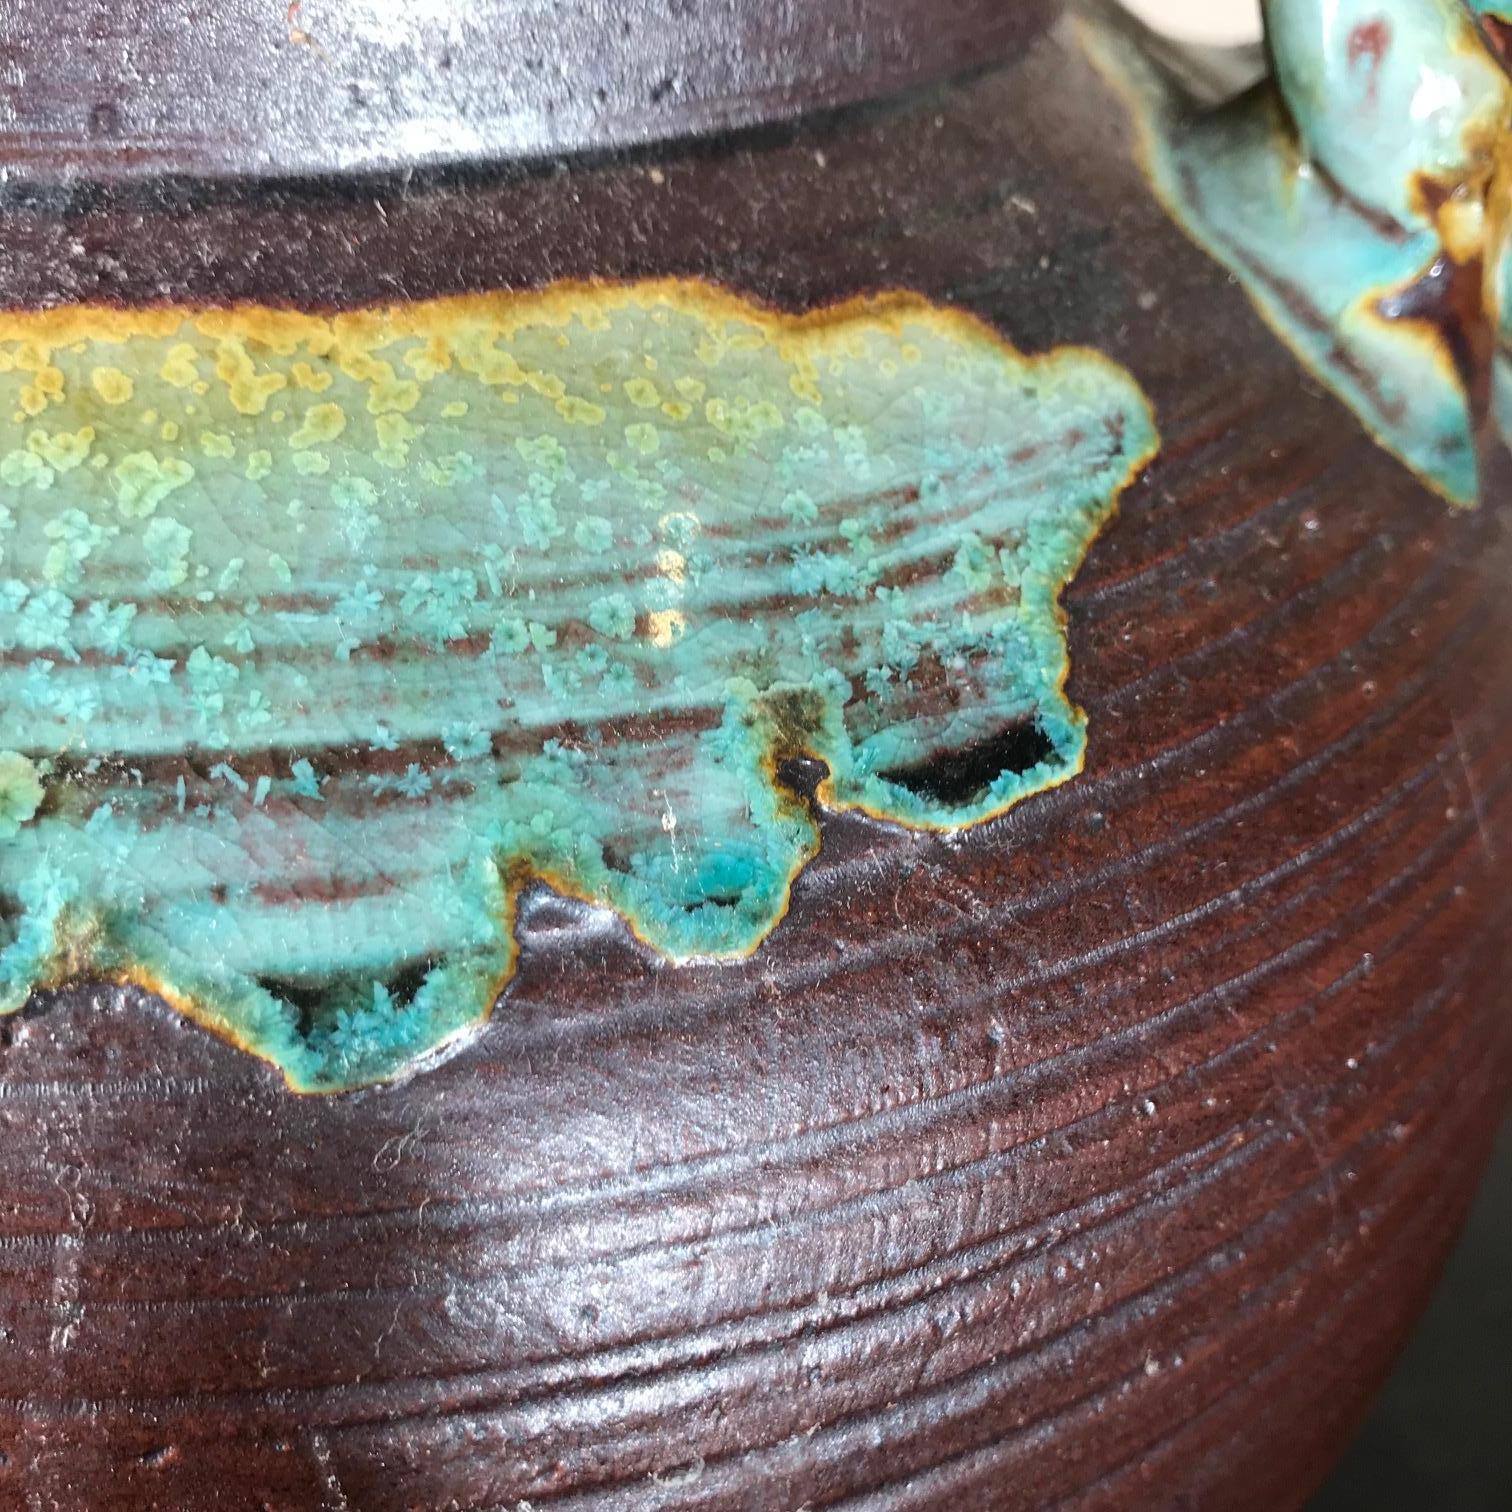 Ceramic Japan Big Older Flower Pot Tea Vessel, Finely Crafted with Colorful Glaze